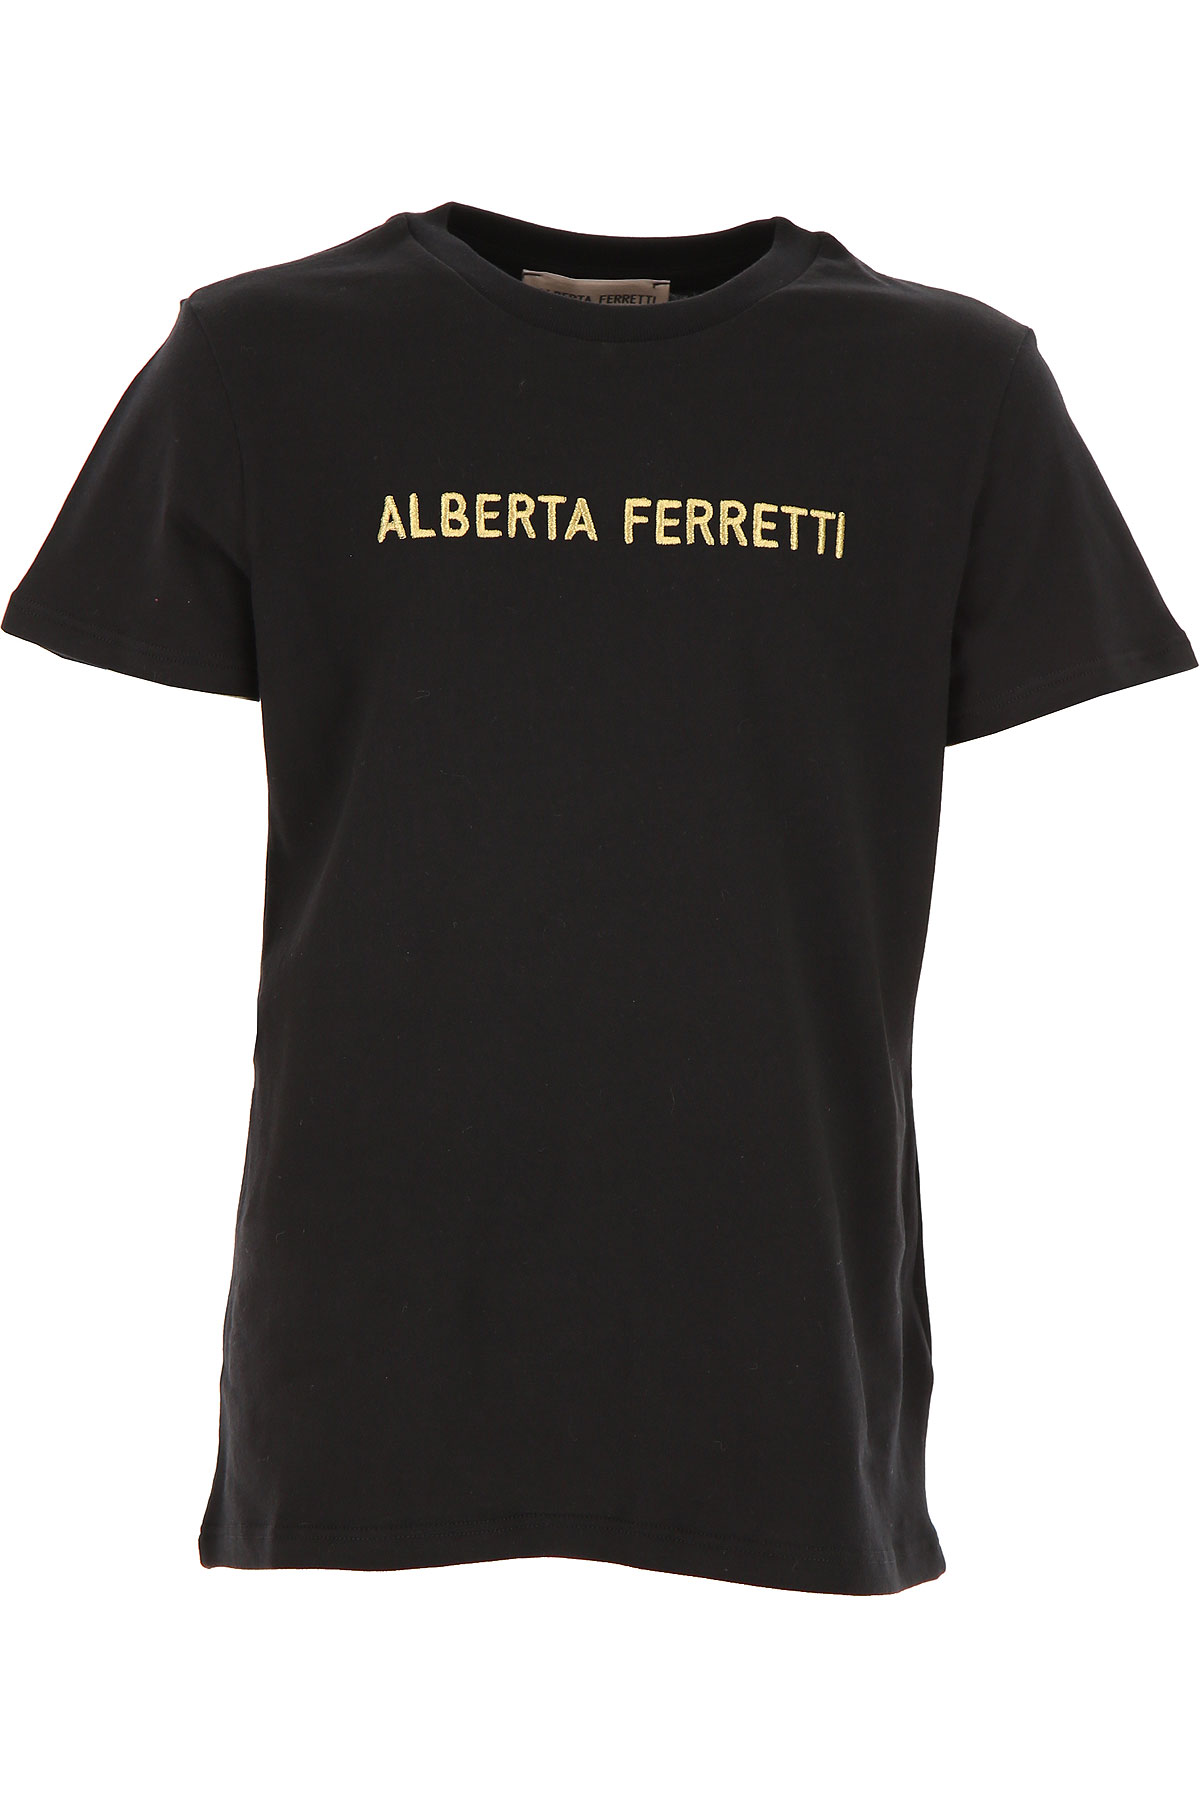 Alberta Ferretti Kinder T-Shirt für Mädchen Günstig im Sale, Schwarz, Baumwolle, 2017, 10Y 12Y 14Y 8Y